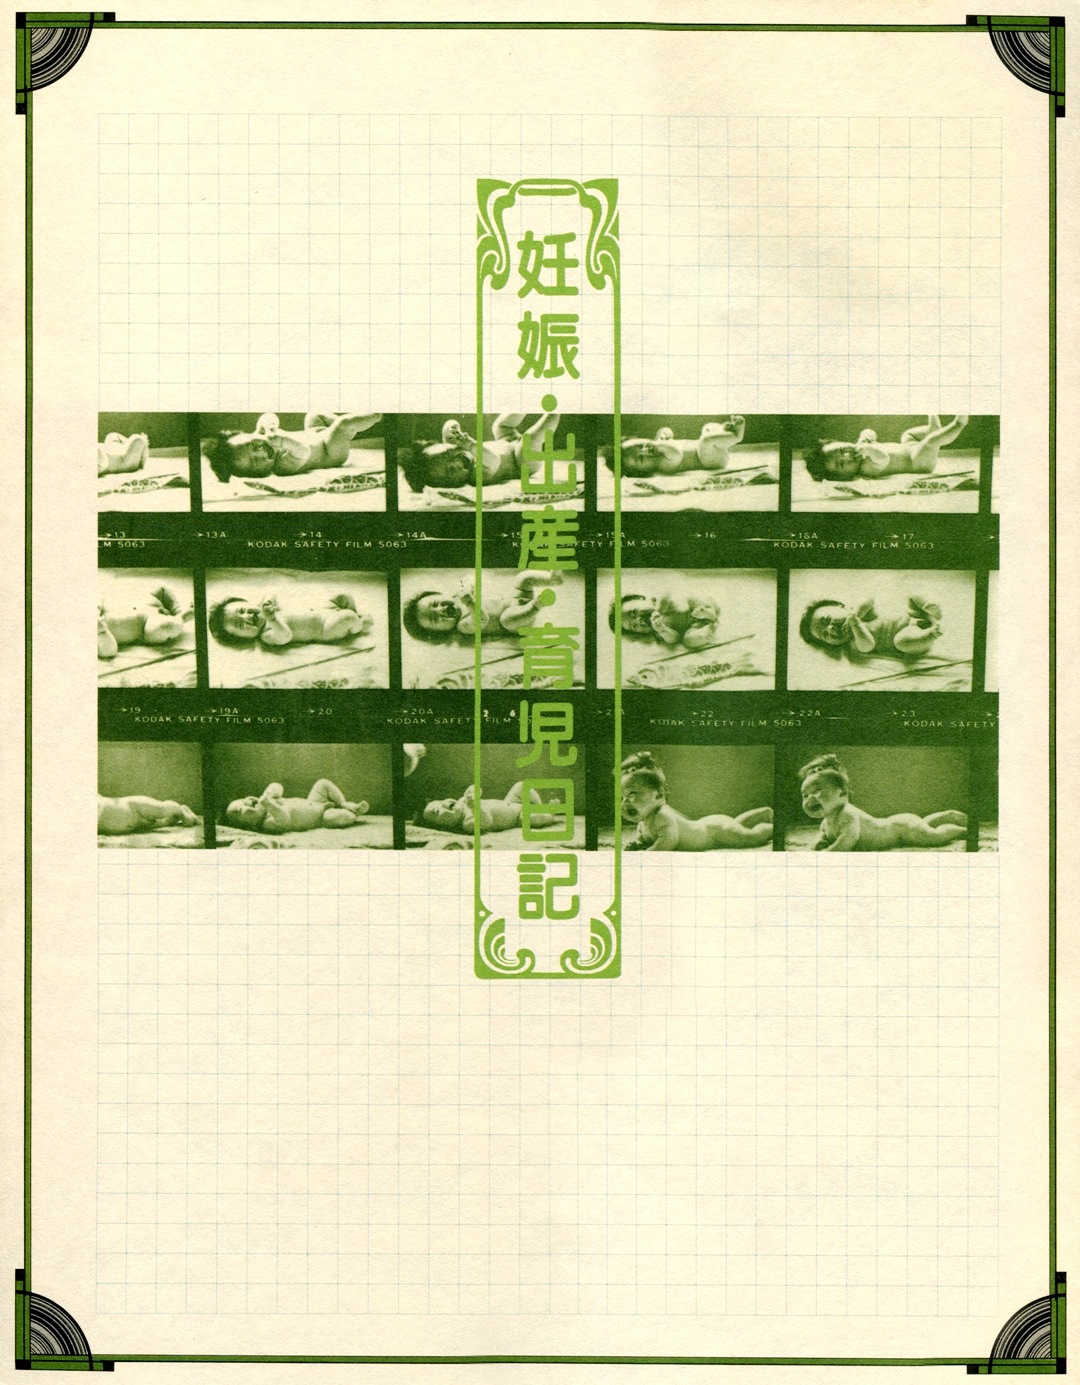 「怀孕・分娩・育儿日记」 1989